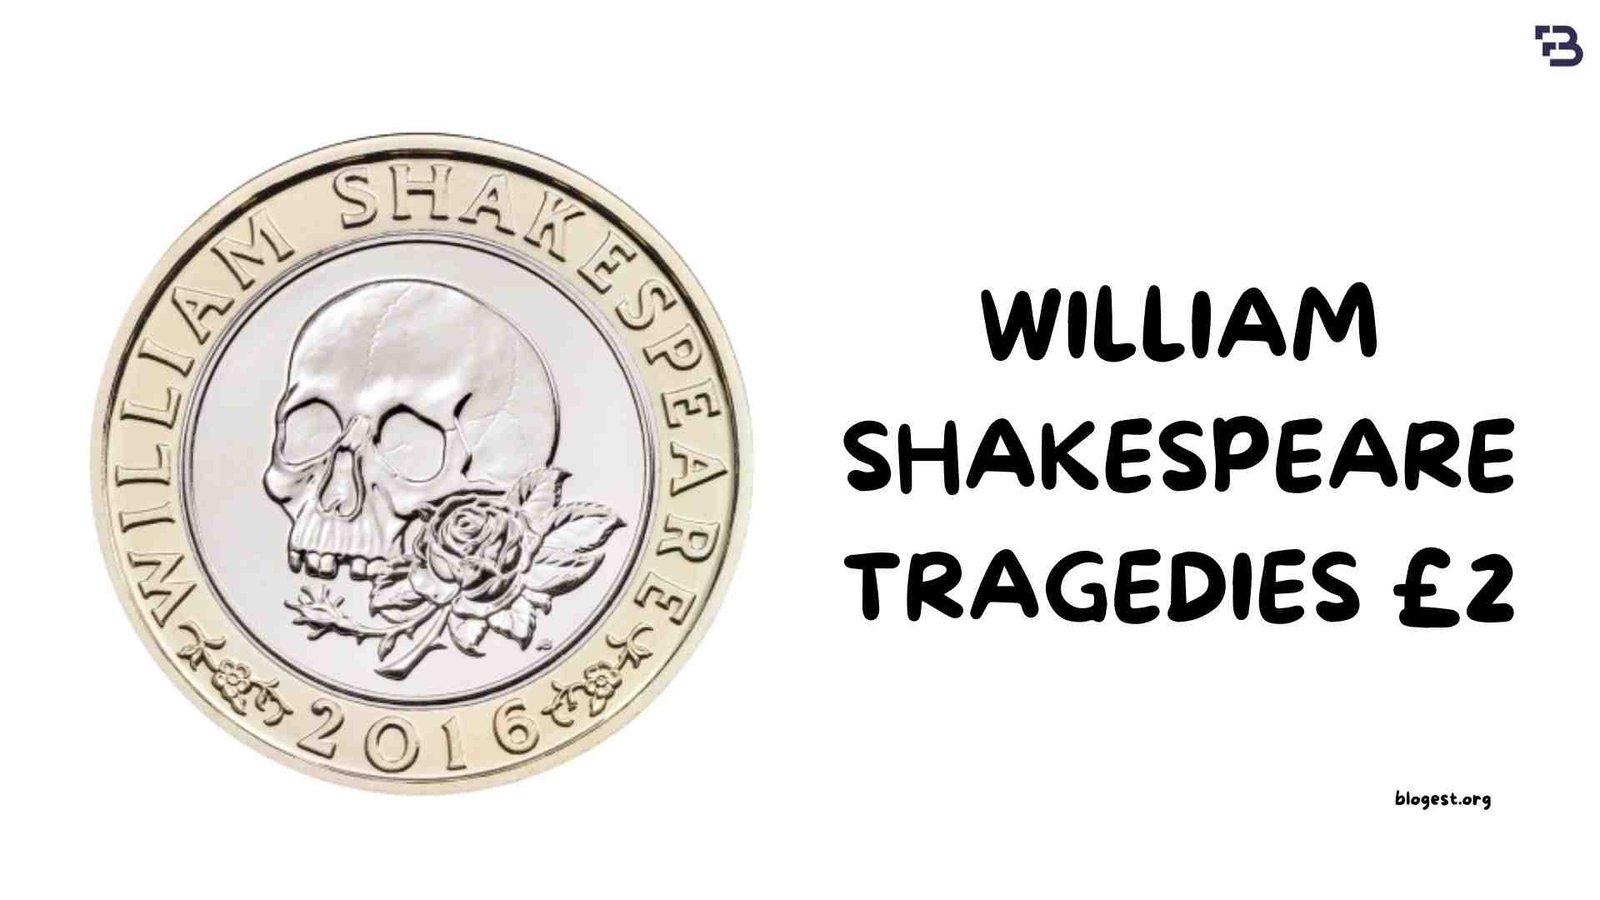 William Shakespeare Coin 2 Tragedies